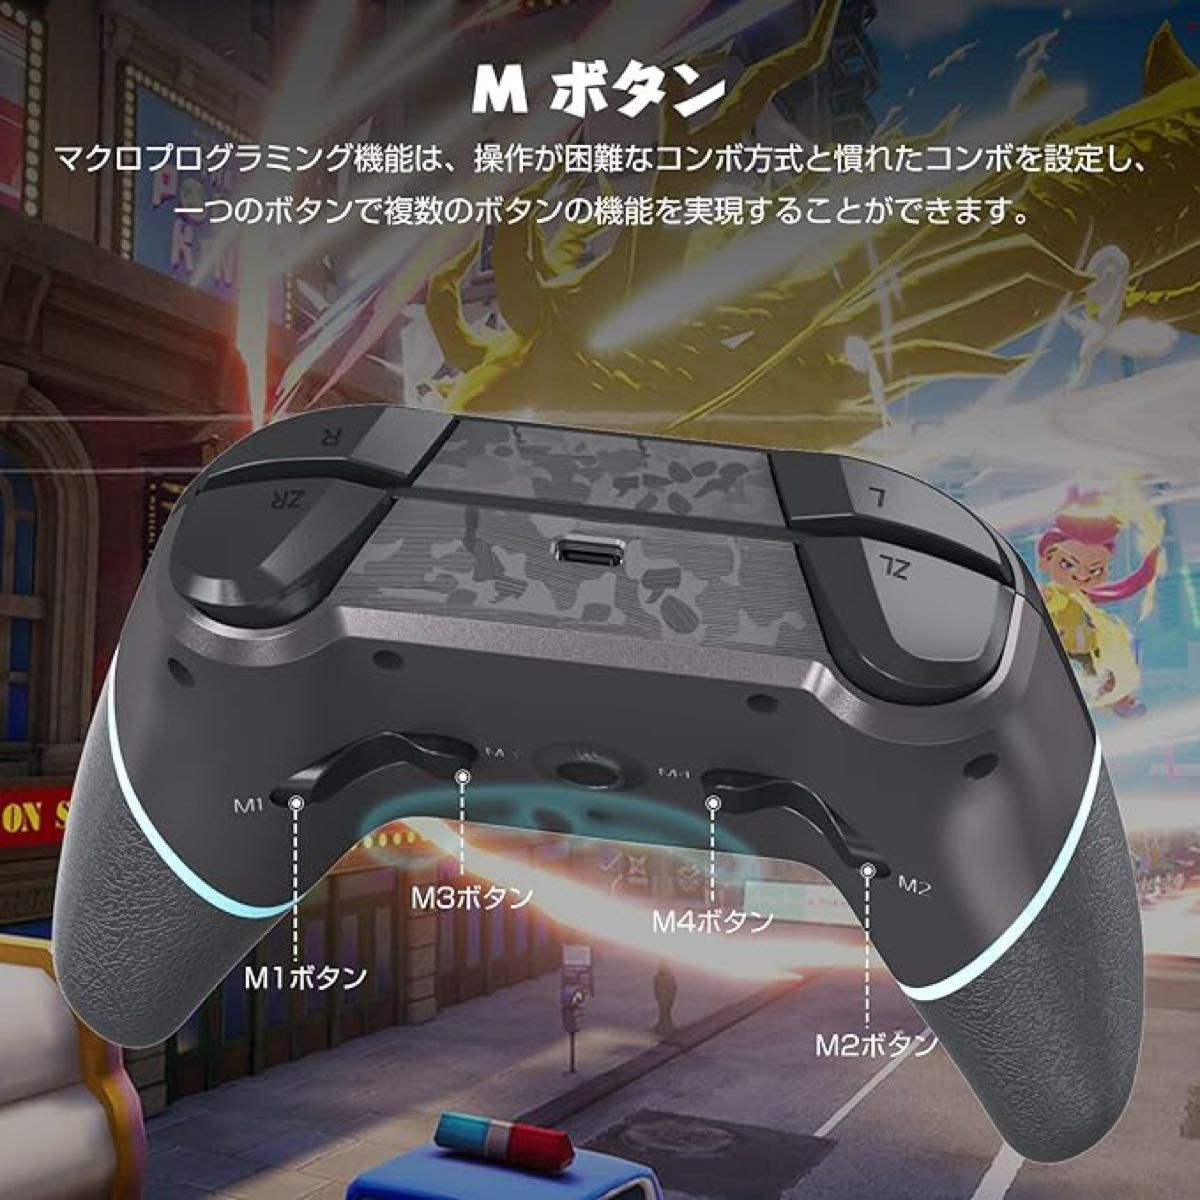 Nintendo Switchワイヤレスコントローラー ニンテンドースイッチ ゲーム ブラック黒 Bluetooth